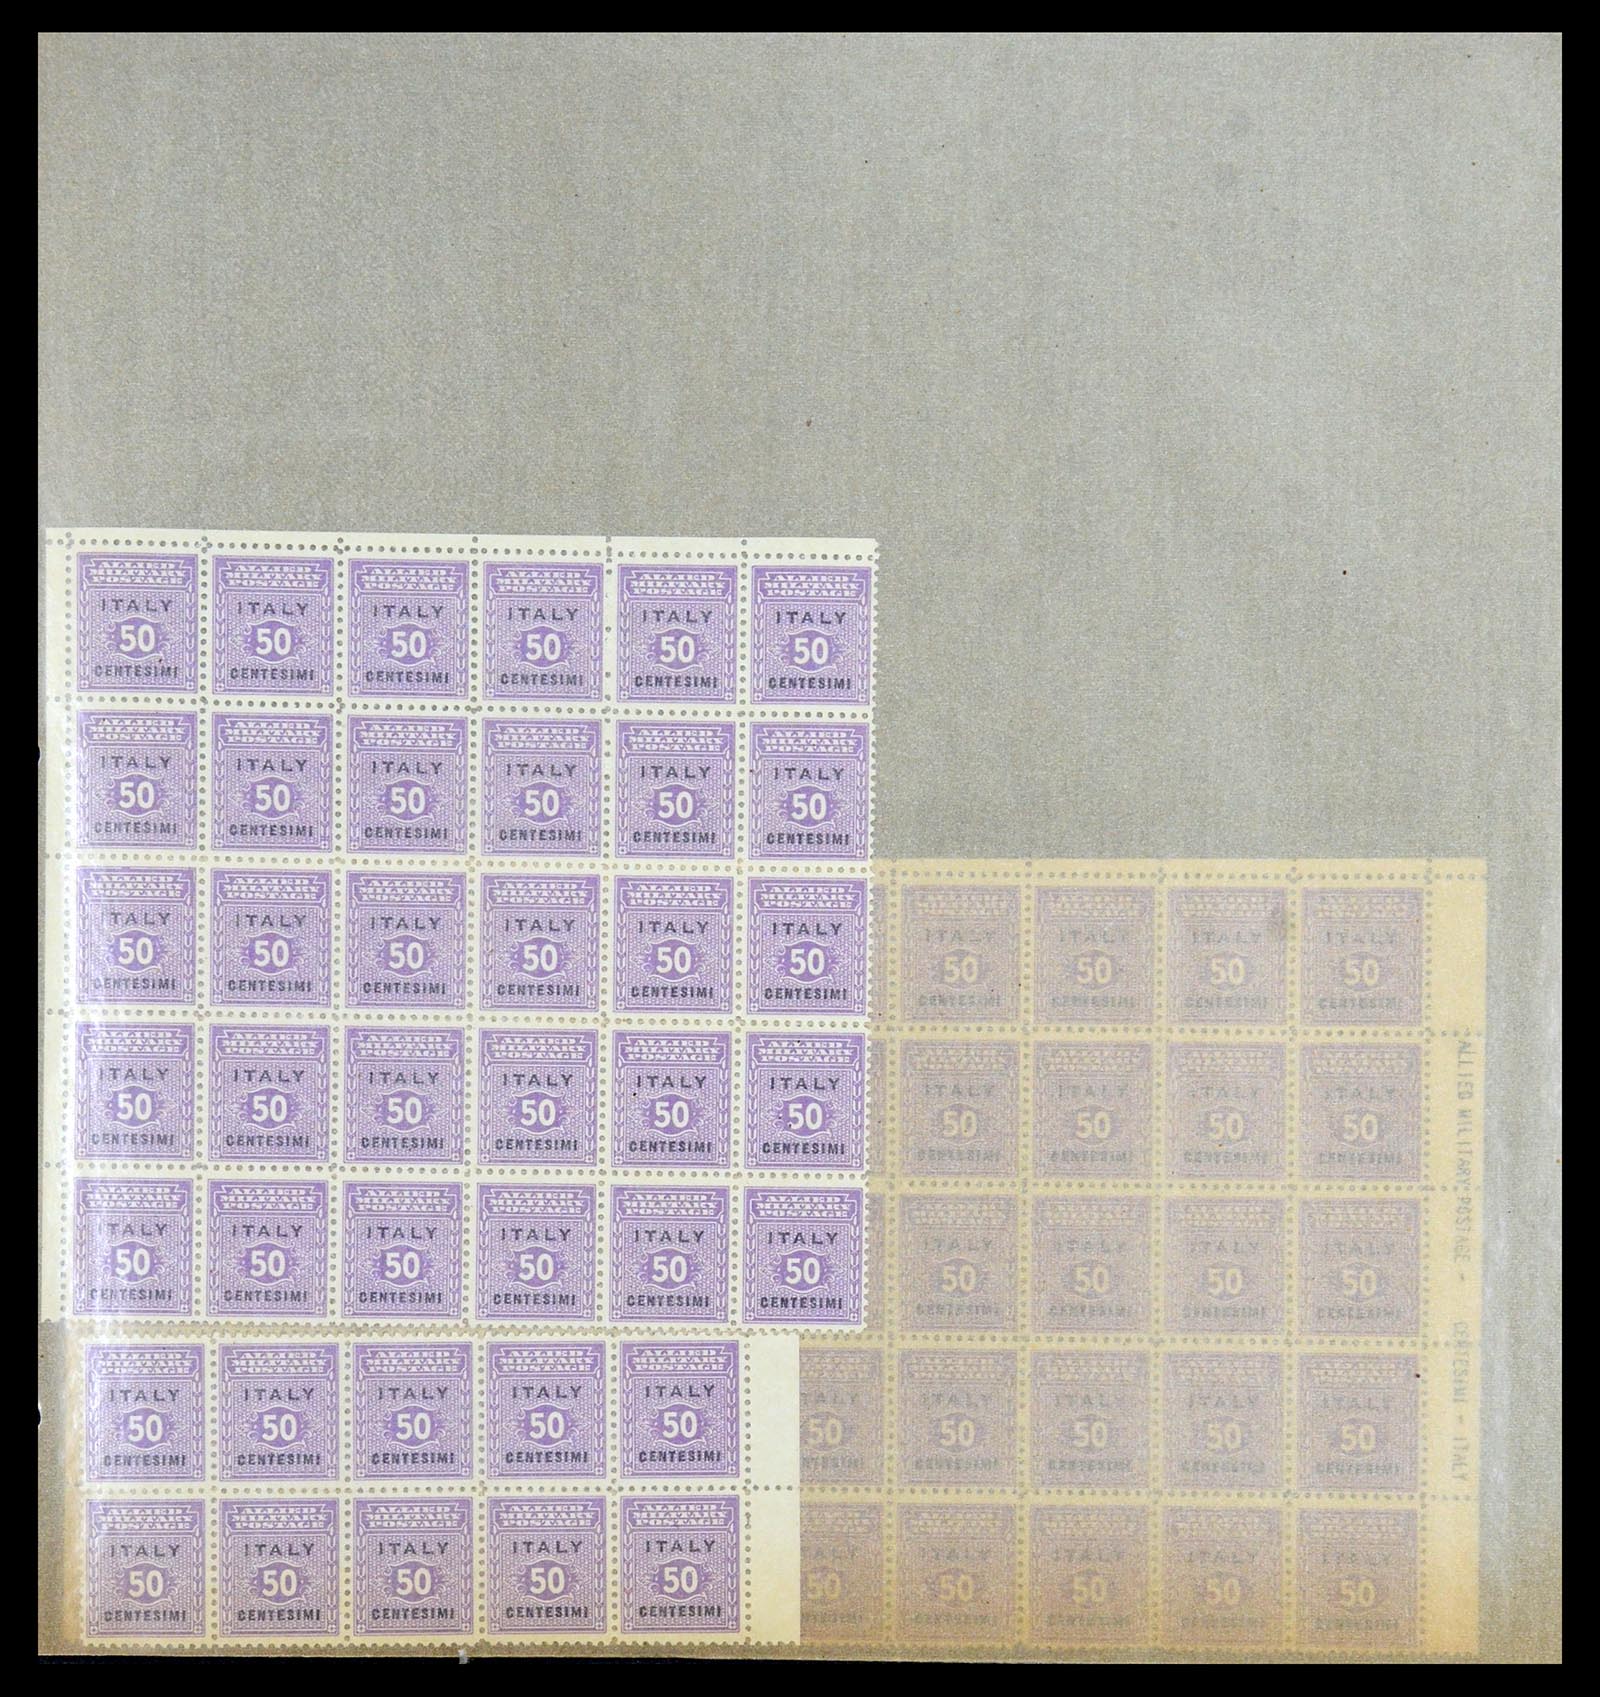 36313 135 - Postzegelverzameling 36313 Wereld uitzoekpartij 1850-1950.